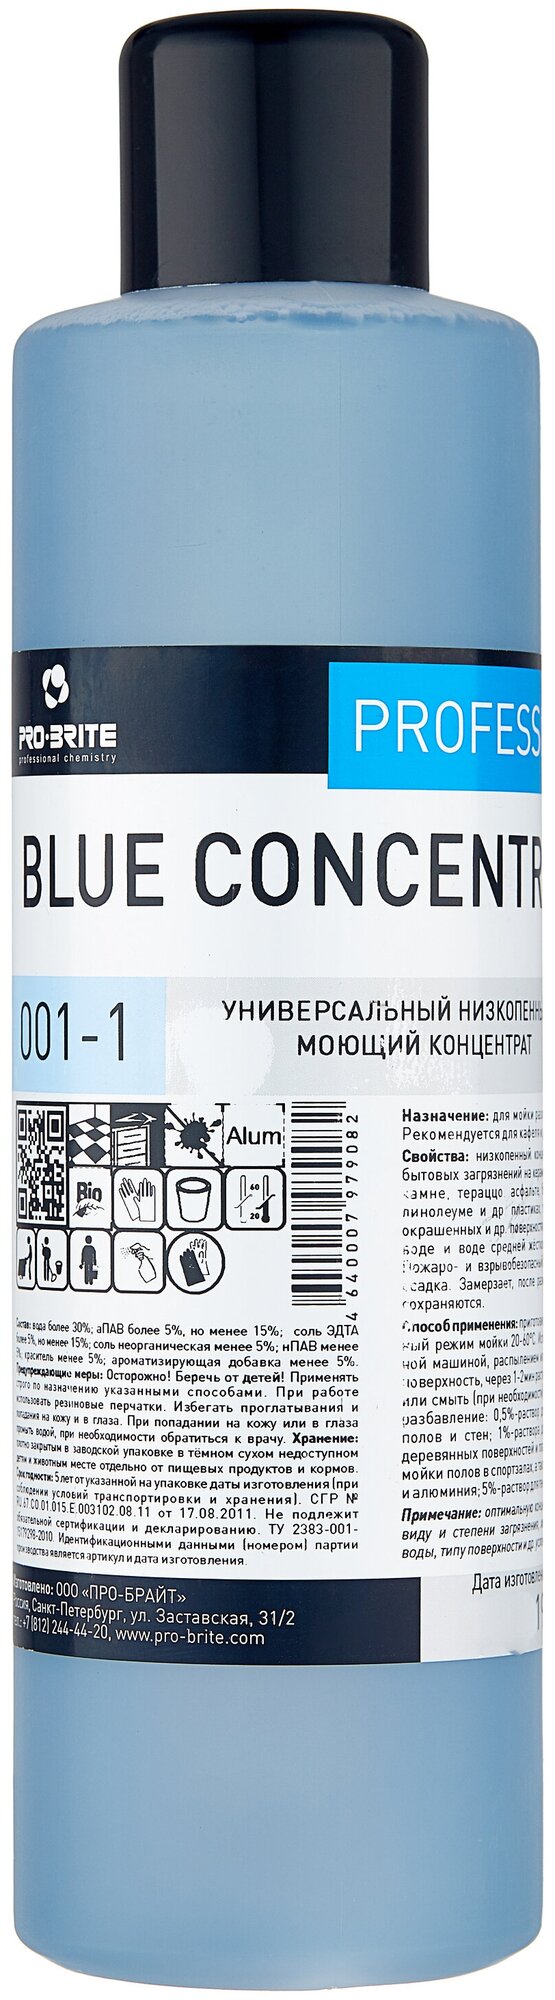 PRO-BRITE BLUE CONCENTRATE. Низкопенный моющий концентрат для ежедневной и генеральной уборки. РН 11. 1л